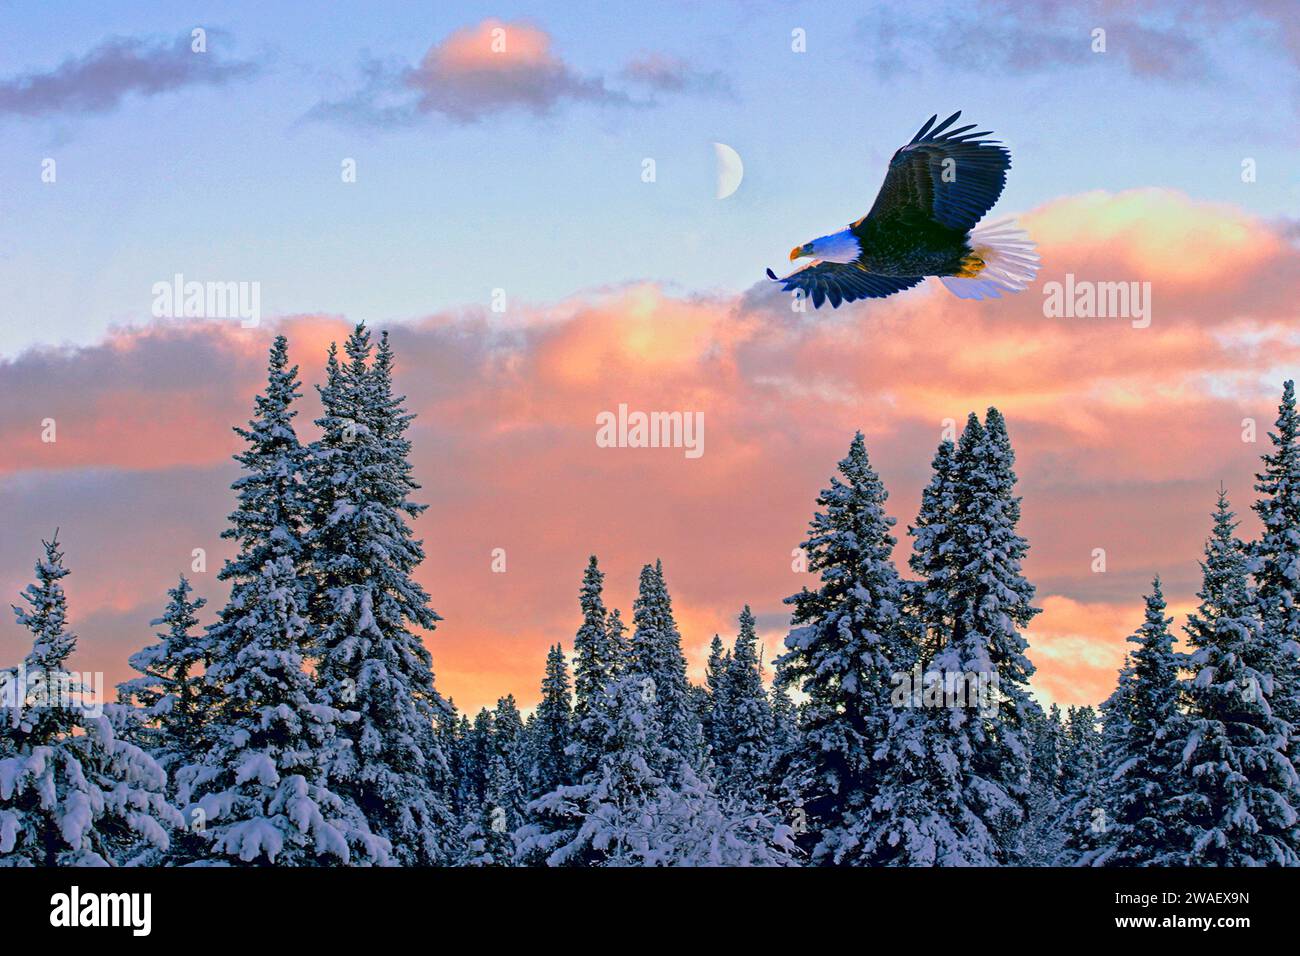 Weißkopfseeadler im Flug, der in der Luft über den Winterwald mit farbenfrohem Sonnenuntergang und Halbmond am Himmel schwingt. Stockfoto